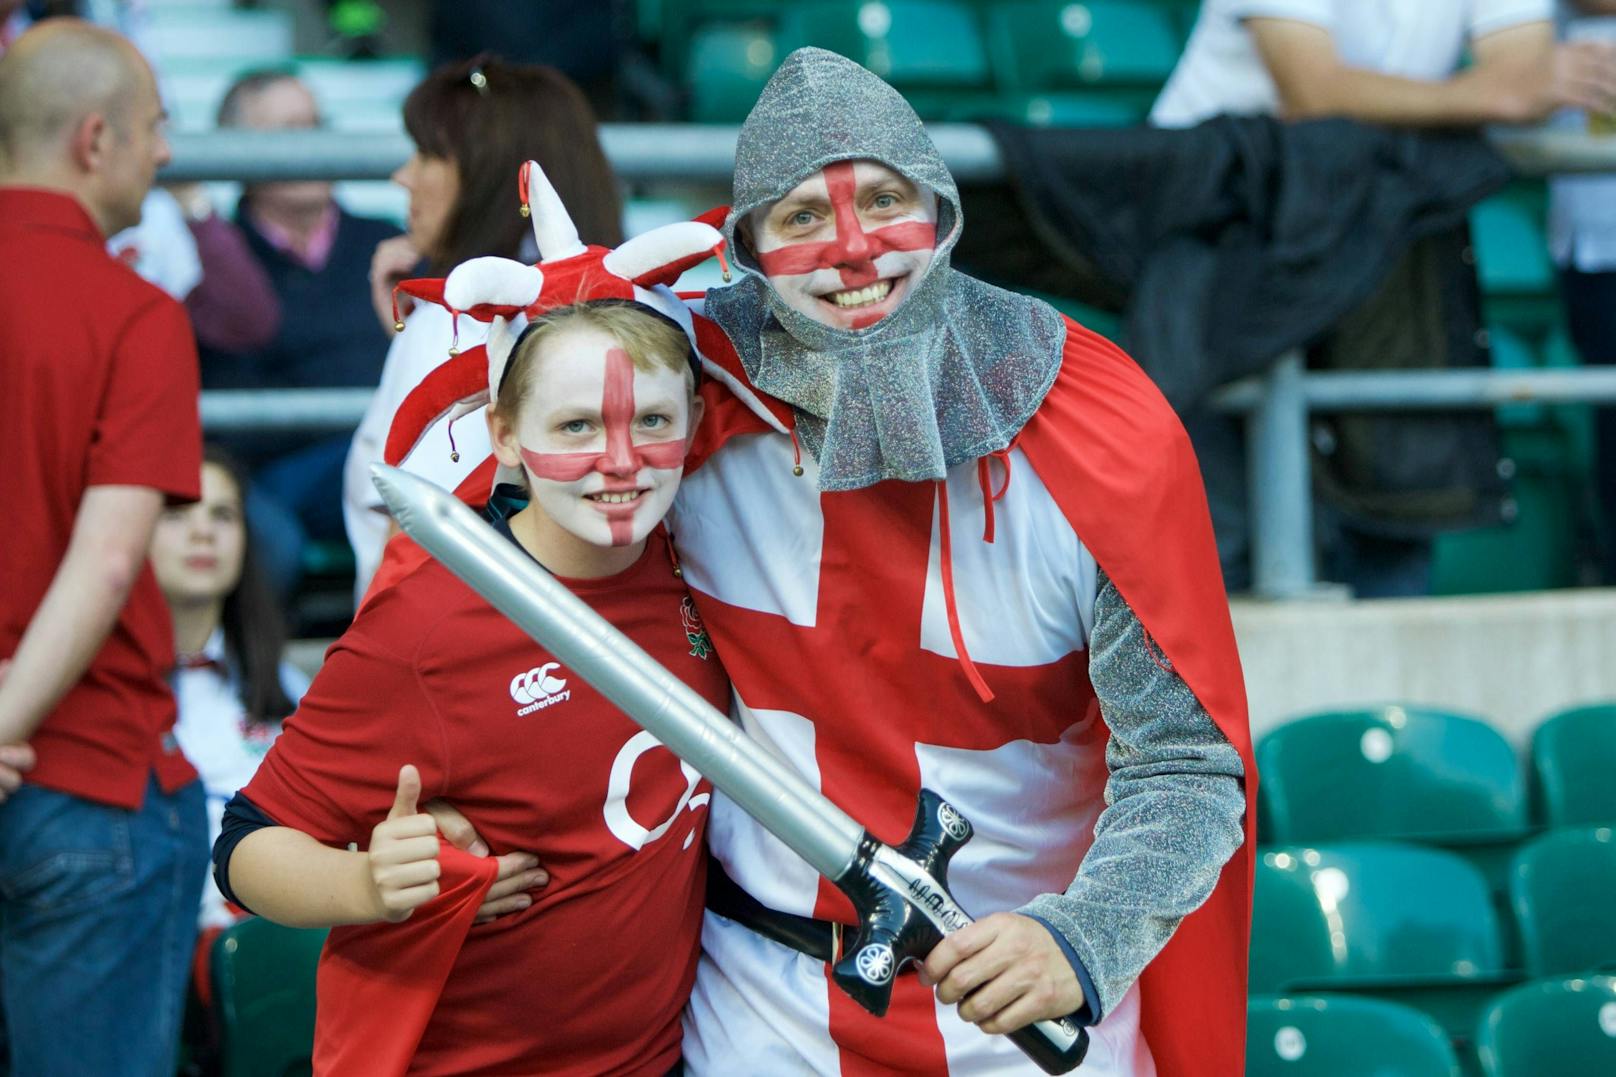 Ein beliebtes Kostüm bei England-Fans: Rüstung und Schwert